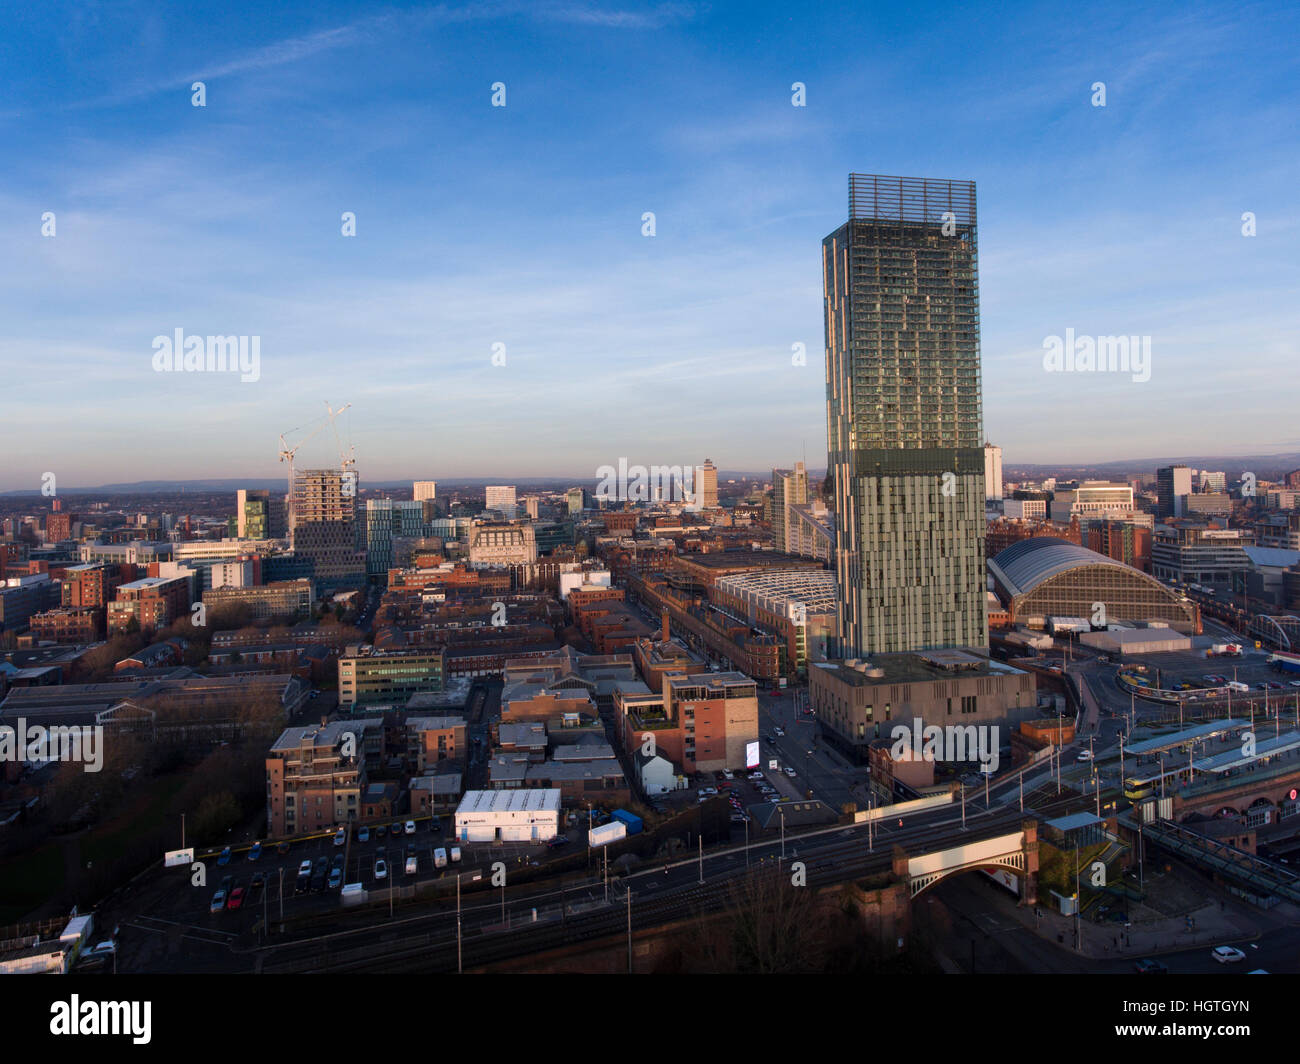 Mirando hacia el horizonte de la ciudad de Manchester Deansgate hacia el hotel Hilton. Foto de stock